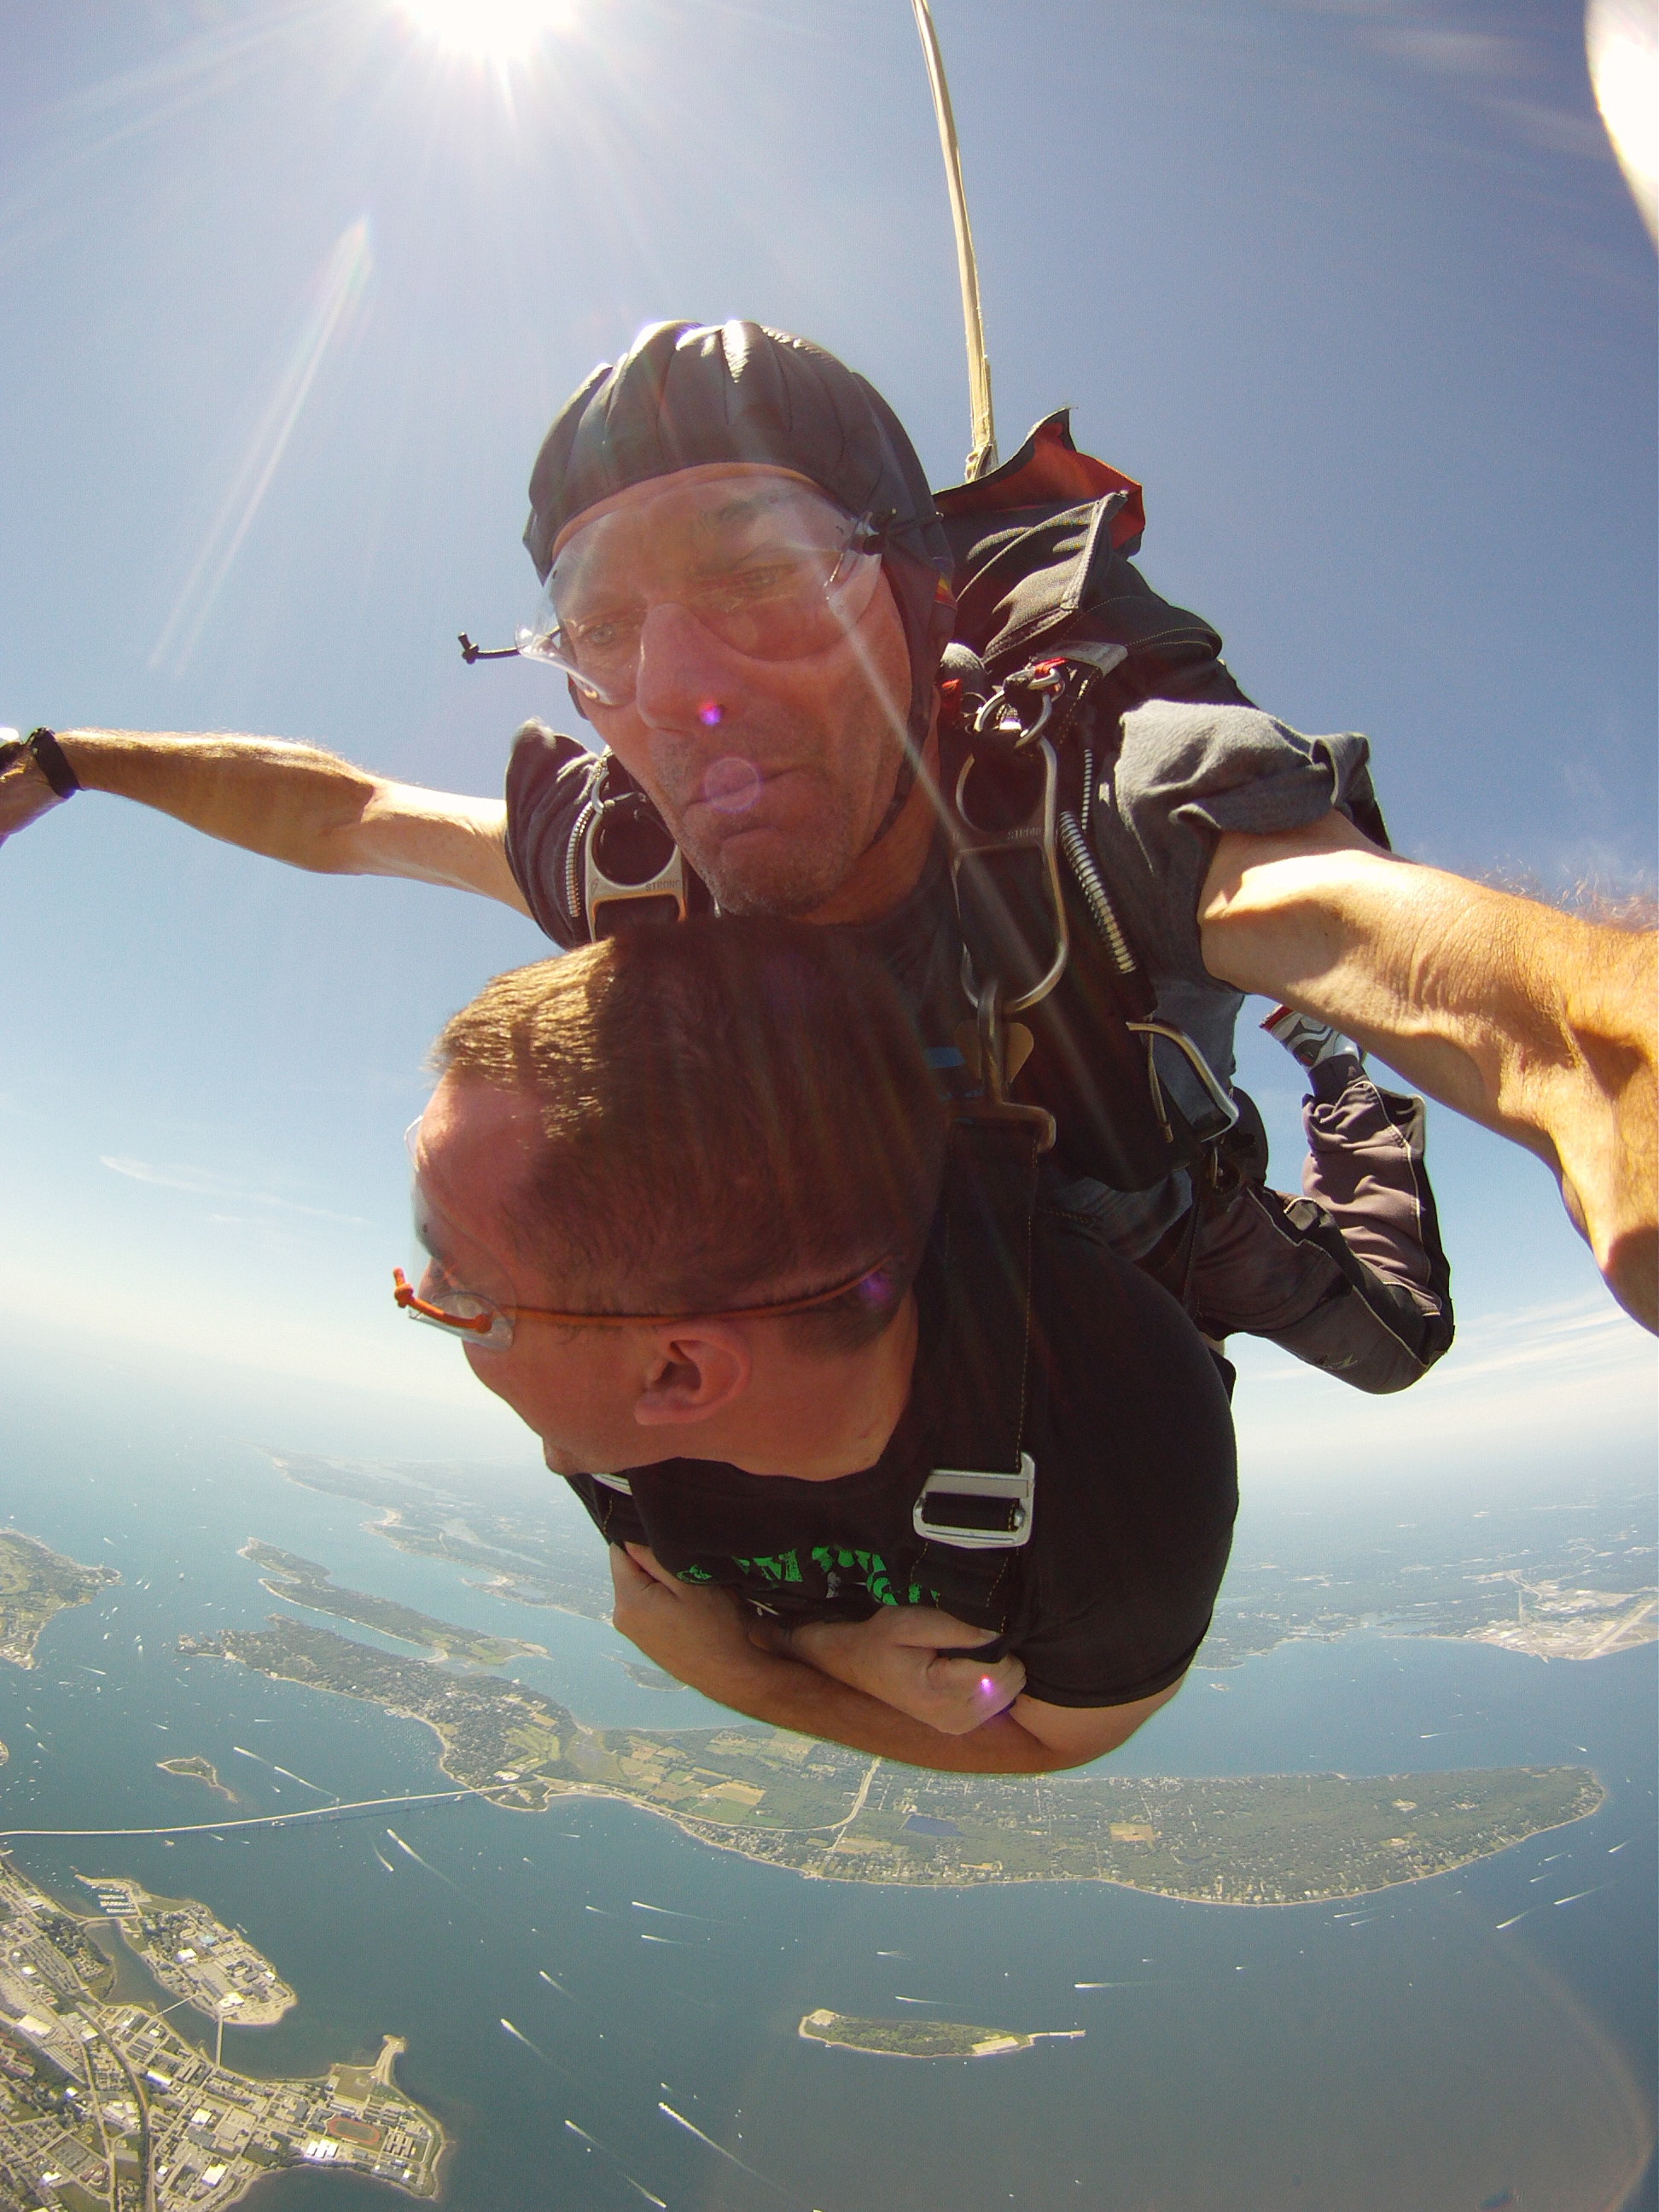 skydiving over newport ri Gallery eBaum's World